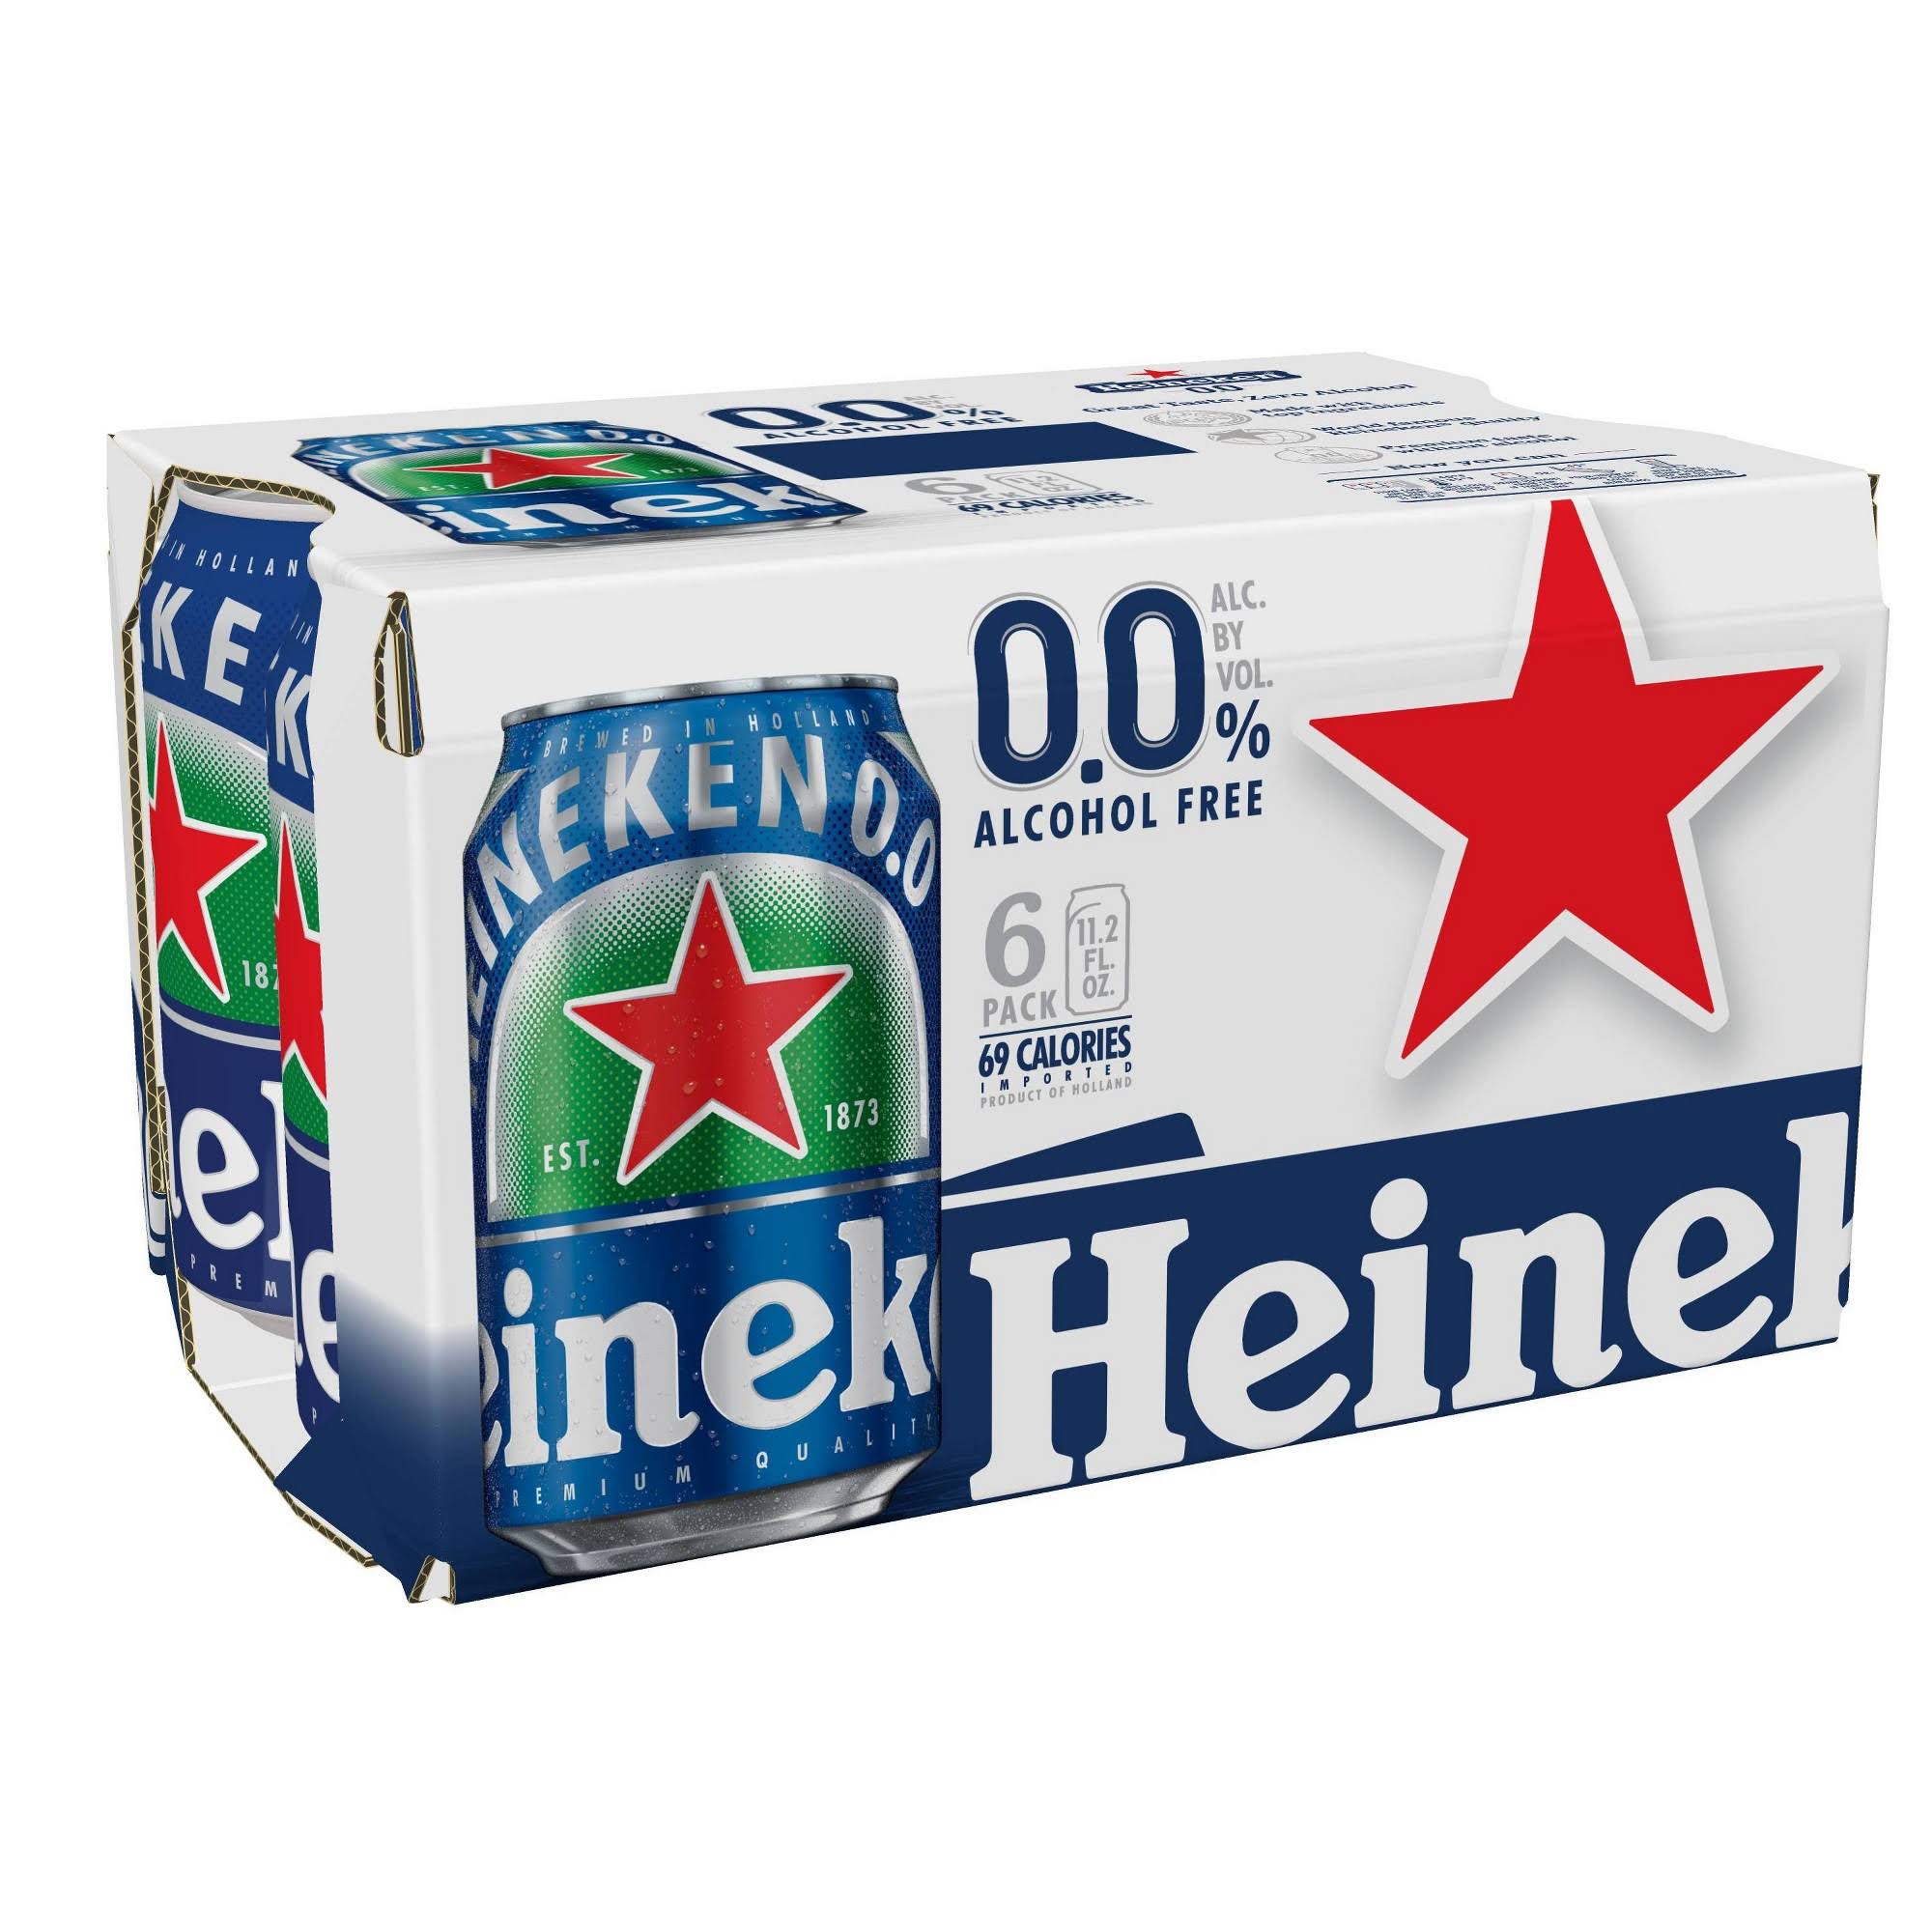 Heineken Beer, Alcohol Free, 6 Pack - 6 pack, 11.2 fl oz cans